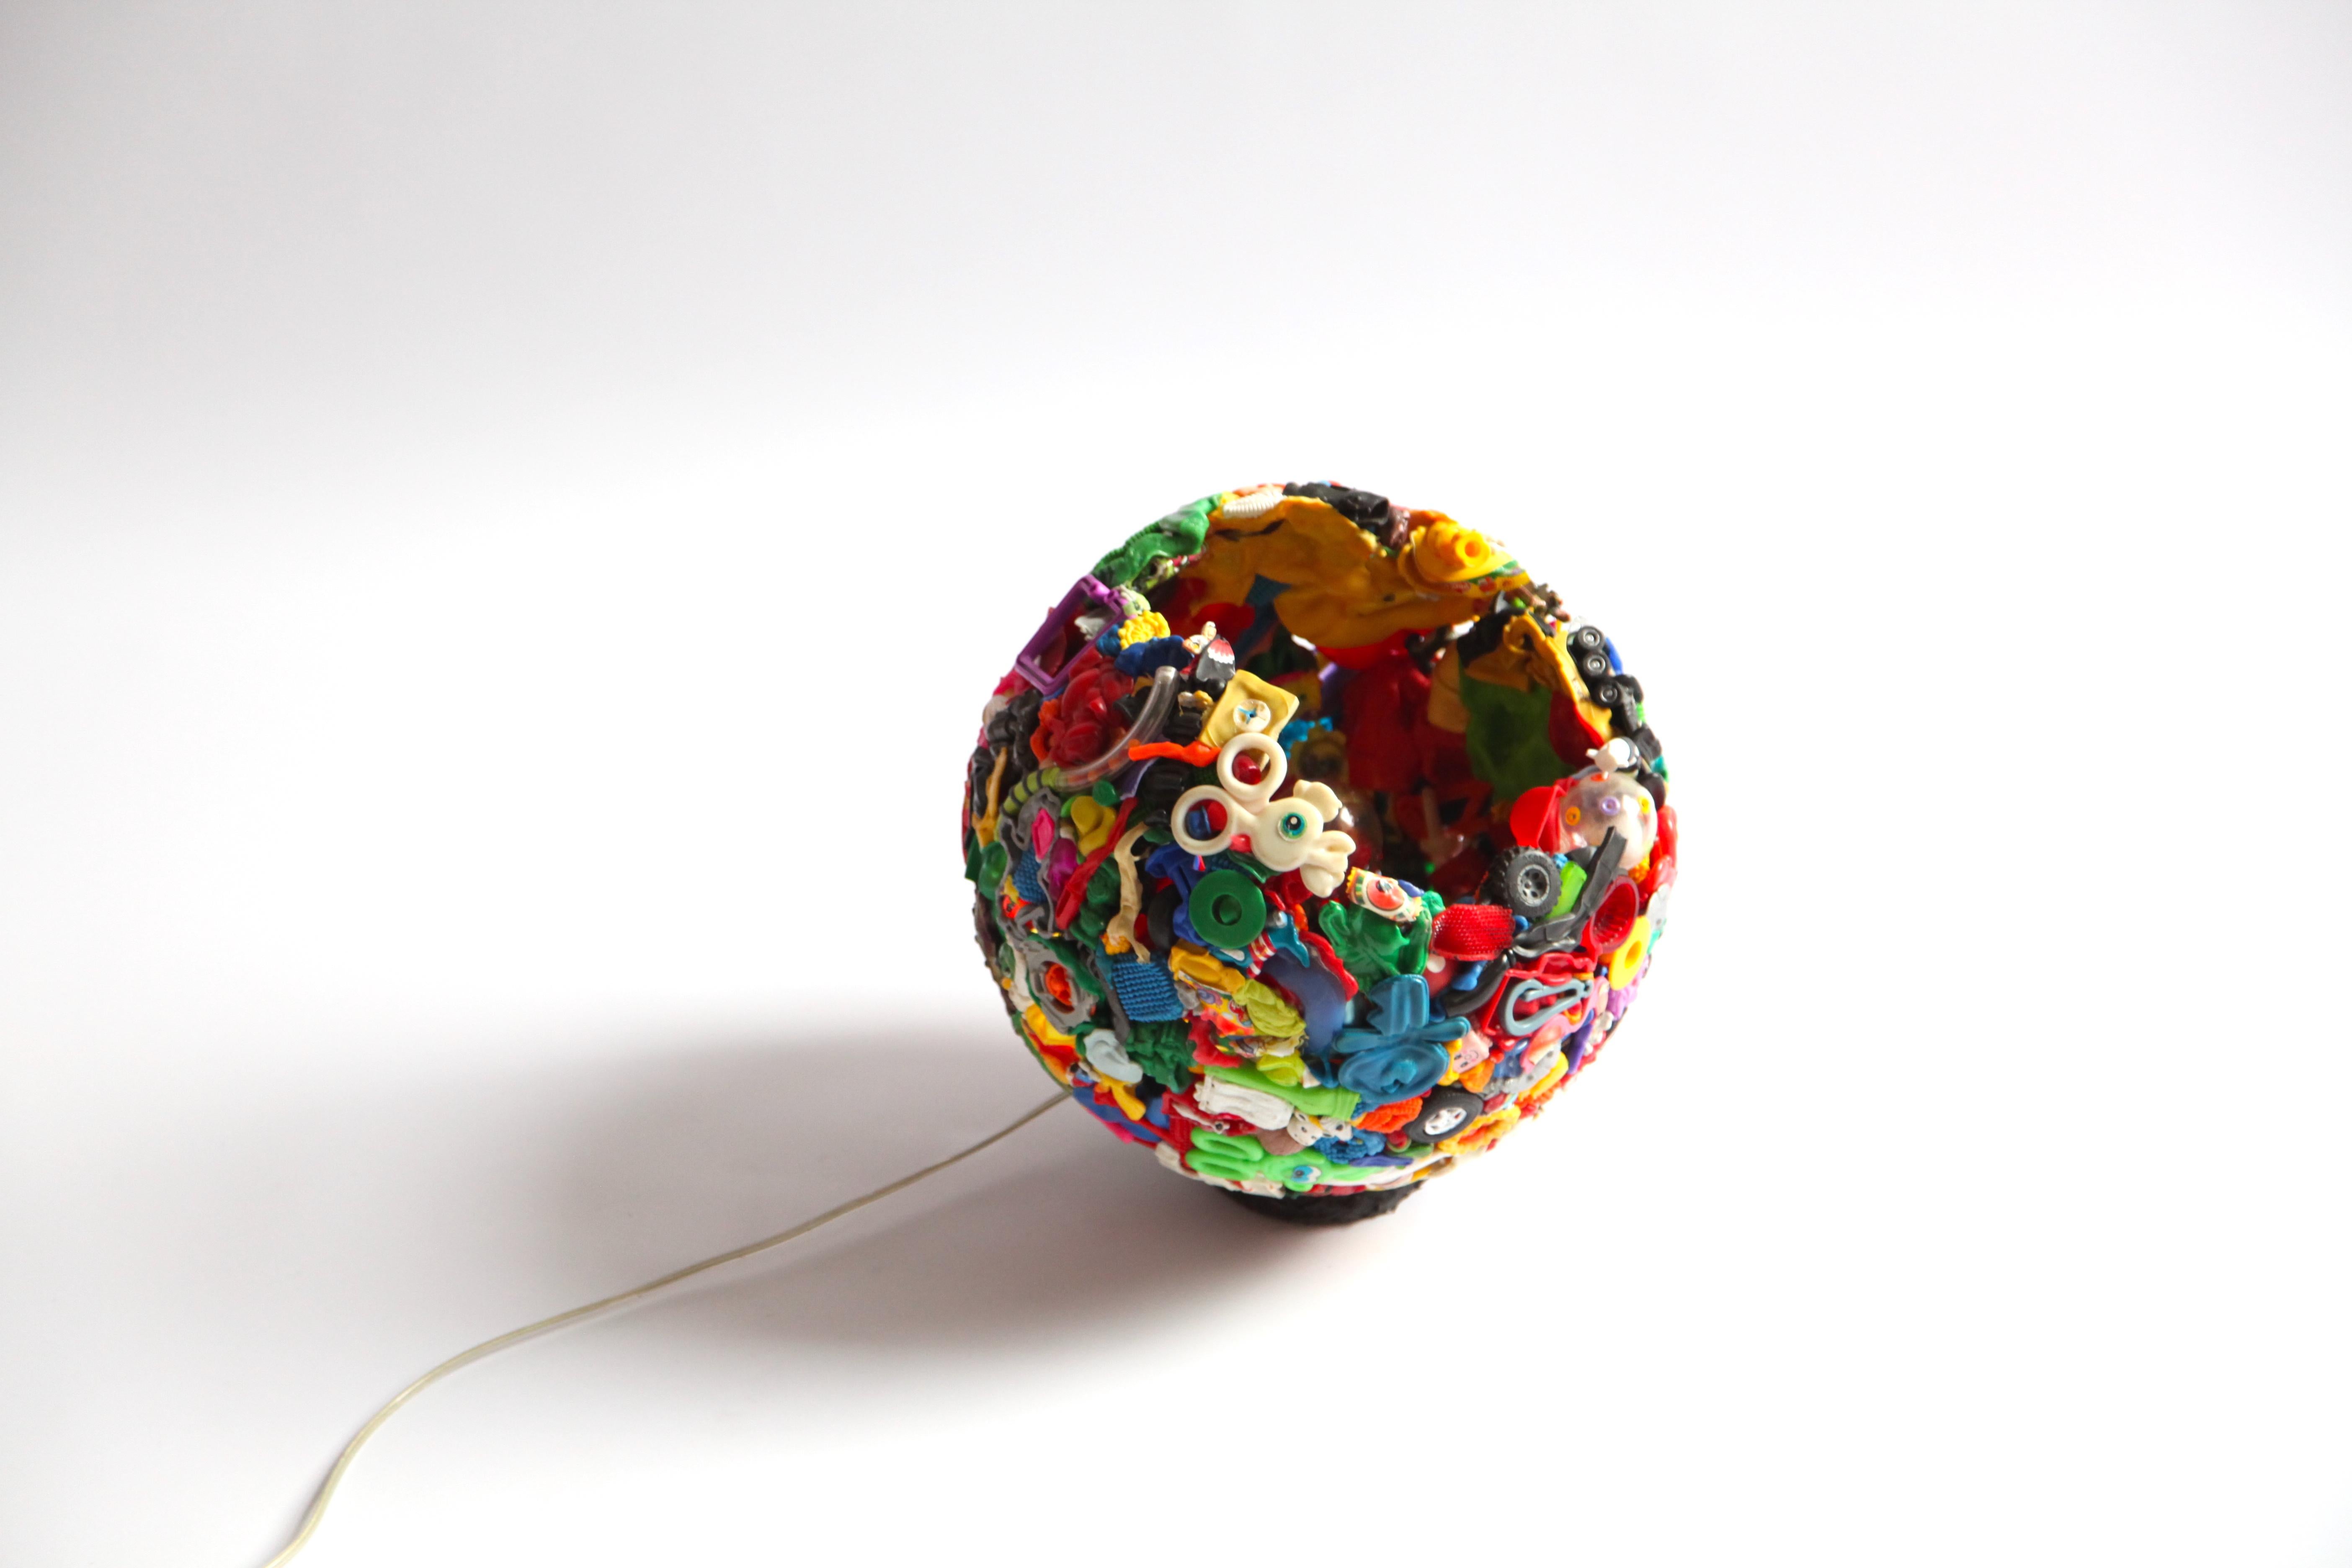 Une lampe unique en son genre, fabriquée en 1999. Richard Hutten a utilisé des ready mades et des déchets de jouets en plastique pour créer un nouvel objet. 

Déjà à l'époque, il était engagé dans la durabilité et la circularité.

Le Meltingpot n'a